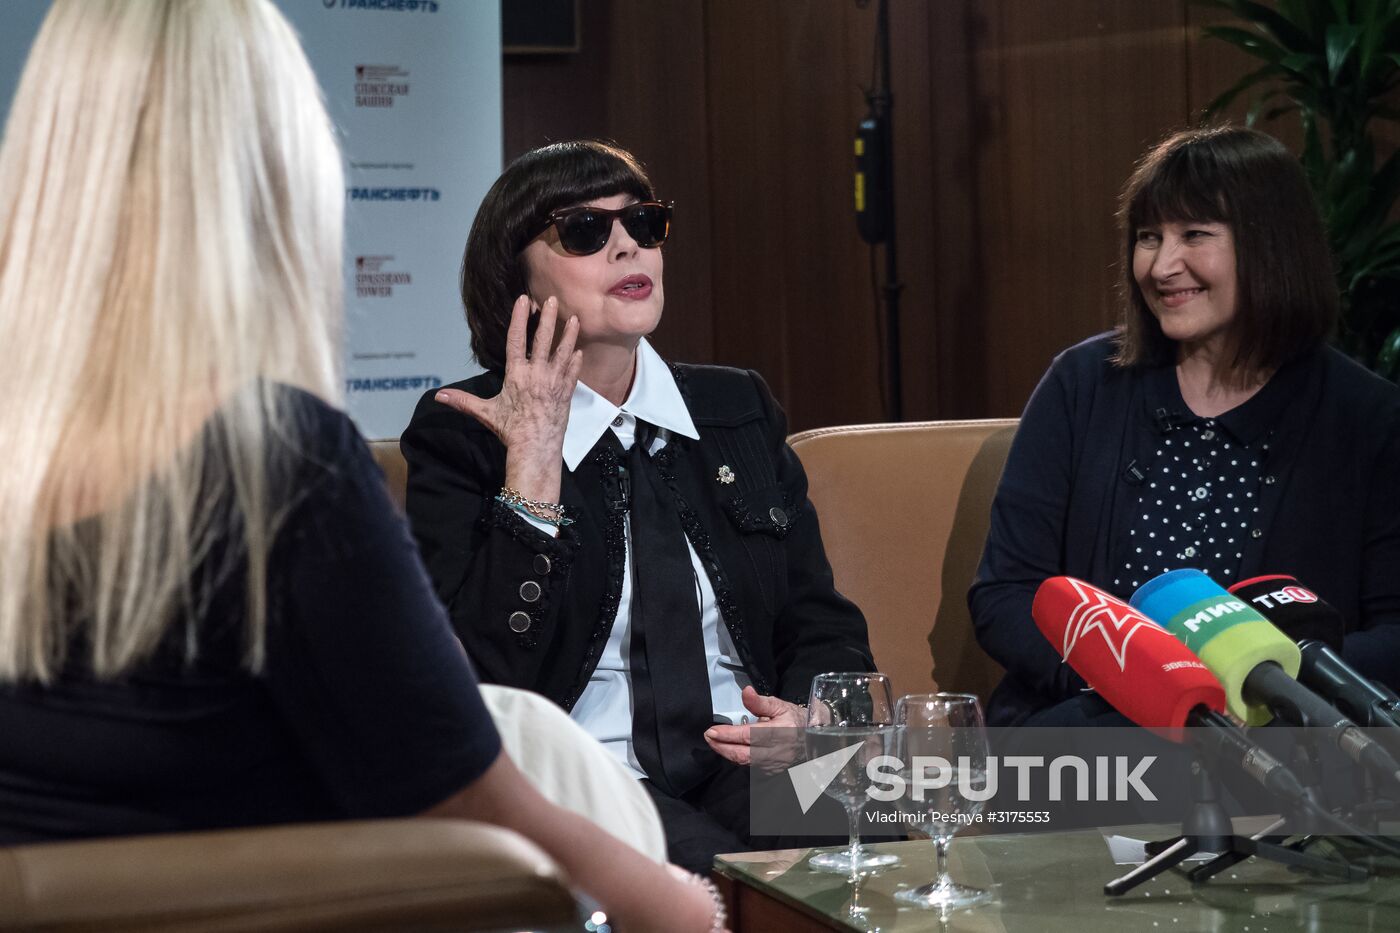 Mireille Mathieu gives interview